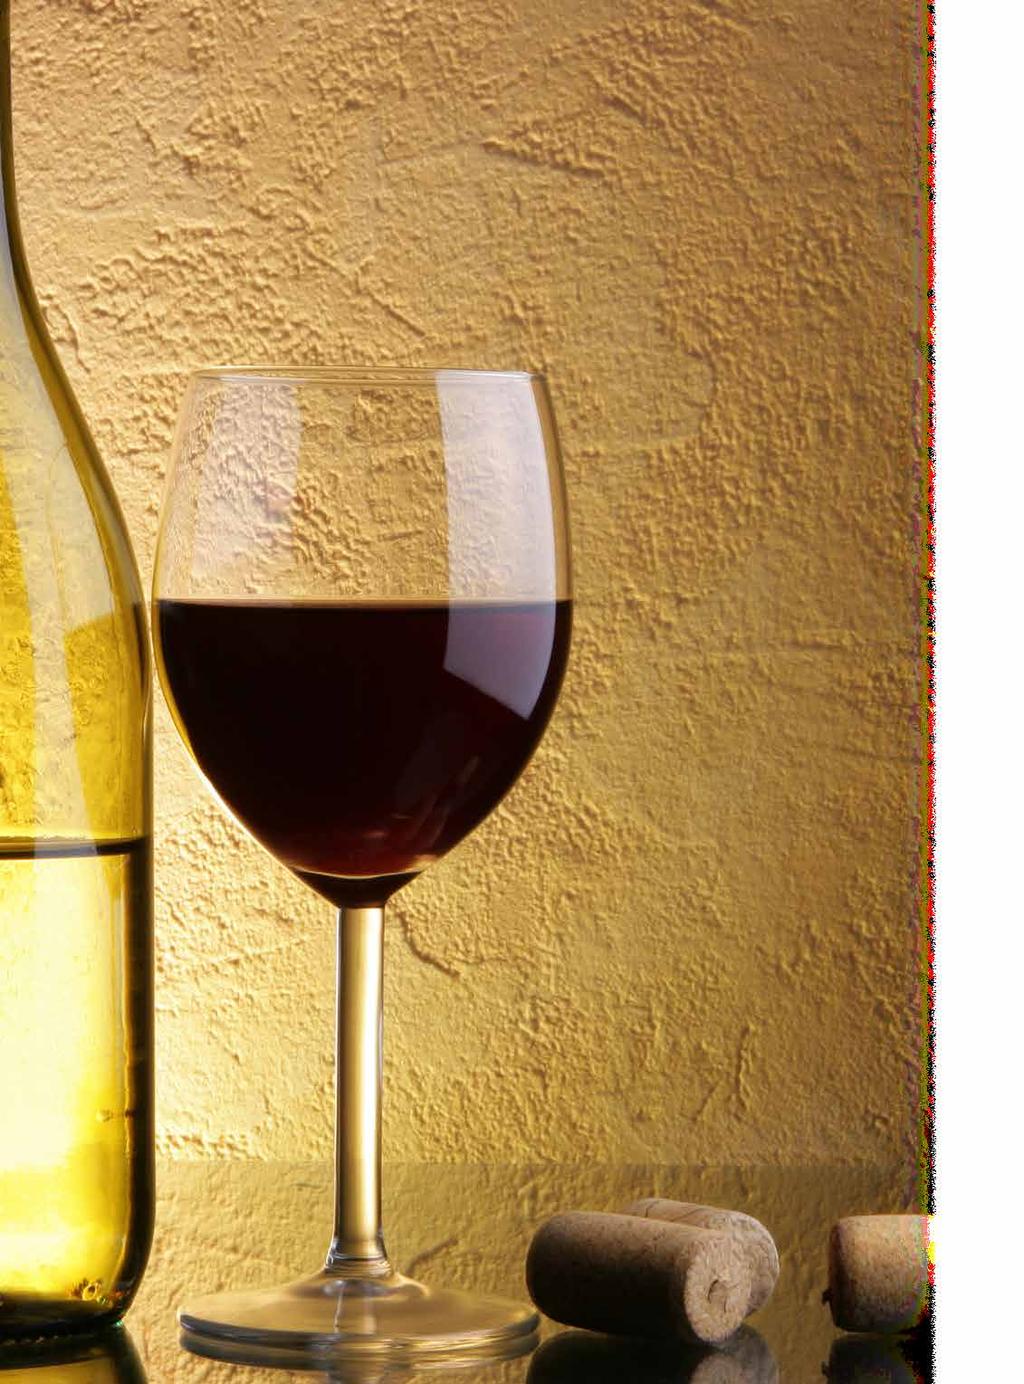 Weinempfehlung Amarone Zeni «Vigne Alte» DOCG Rebsorte: Corvina/Rondinella, Molinara Kräftiges Rubinrot. Gedörrte Zwetschgen und Rosinen in der gehaltvollen Nase, auch Lebkuchengewürze.